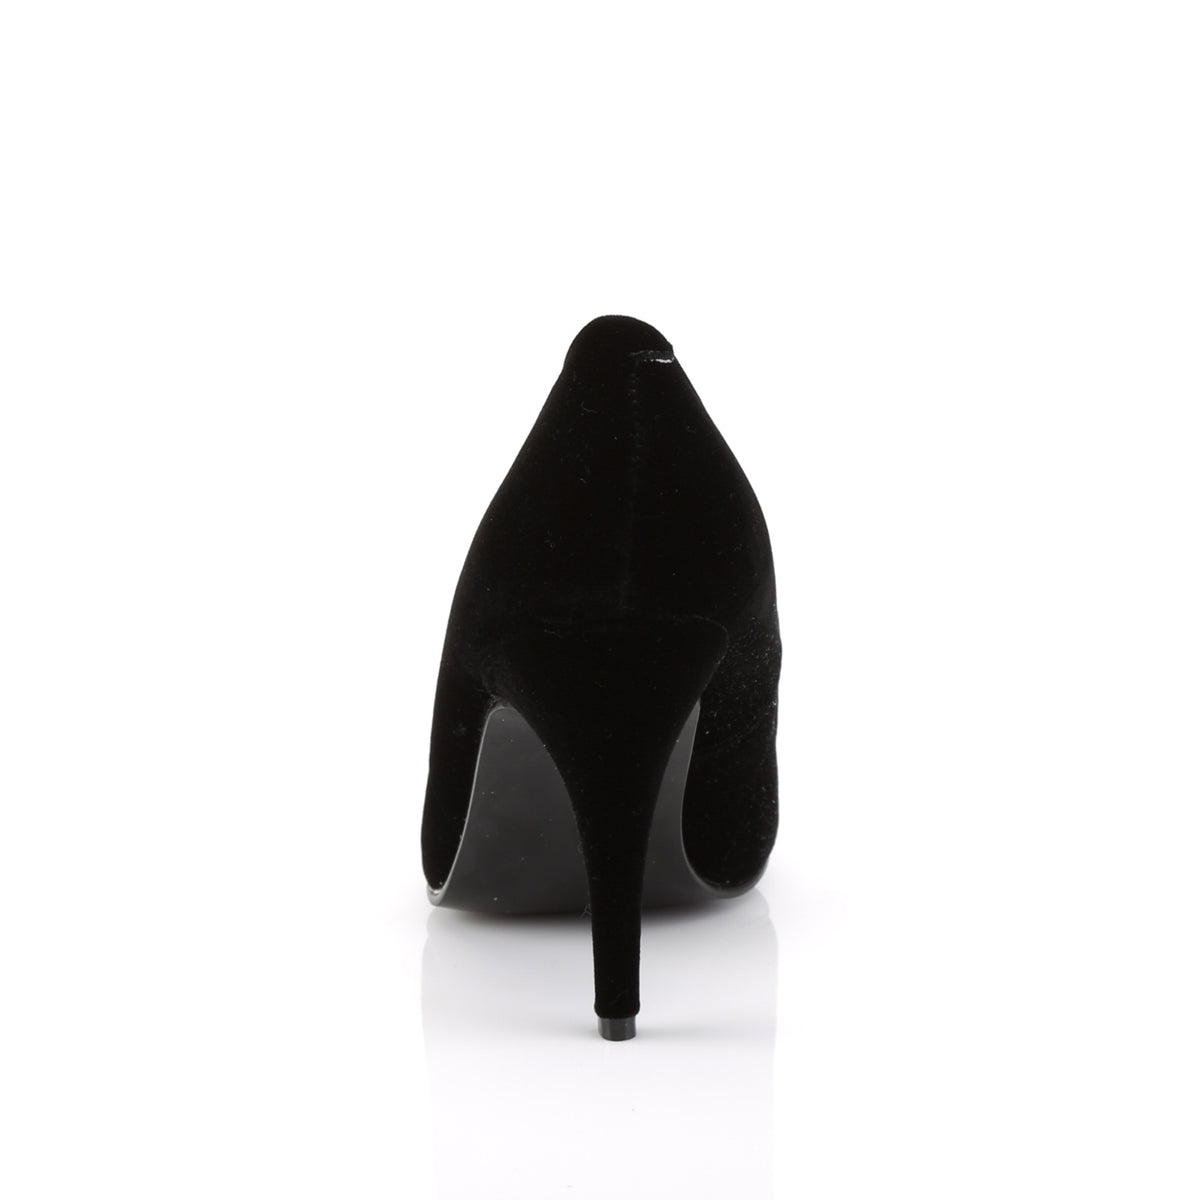 VANITY-420 Pleaser Shoe 4" Heel Black Velvet Fetish Footwear-Pleaser- Sexy Shoes Fetish Footwear